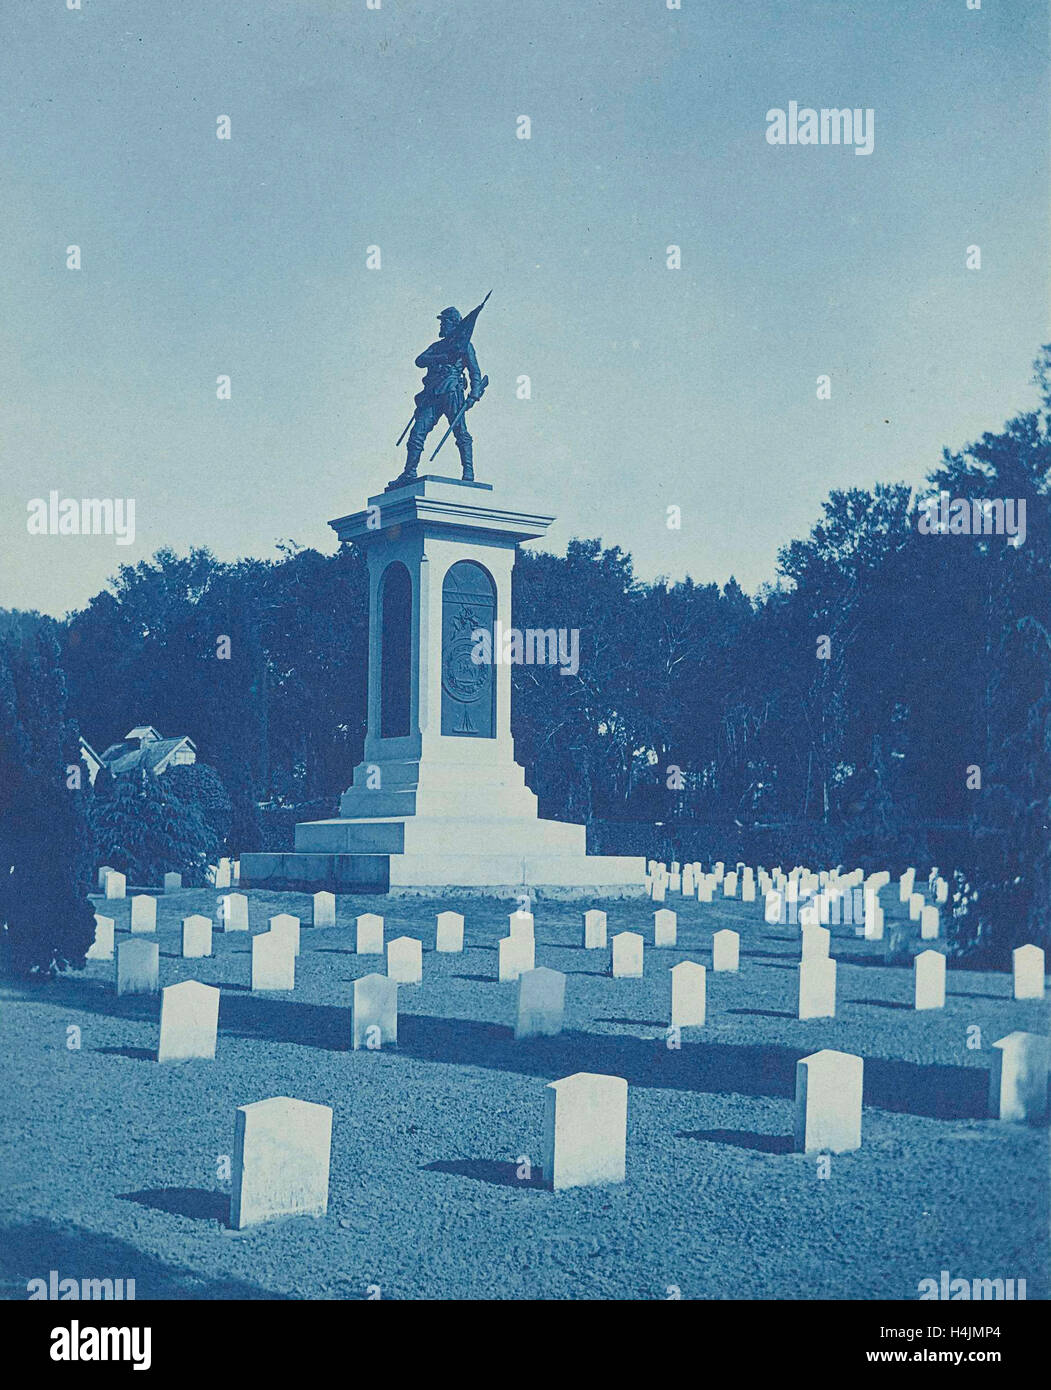 Cimitero e memoriale, presumibilmente dalla guerra civile americana, anonimo, c. 1890 - c. 1920, Cyanotype Foto Stock